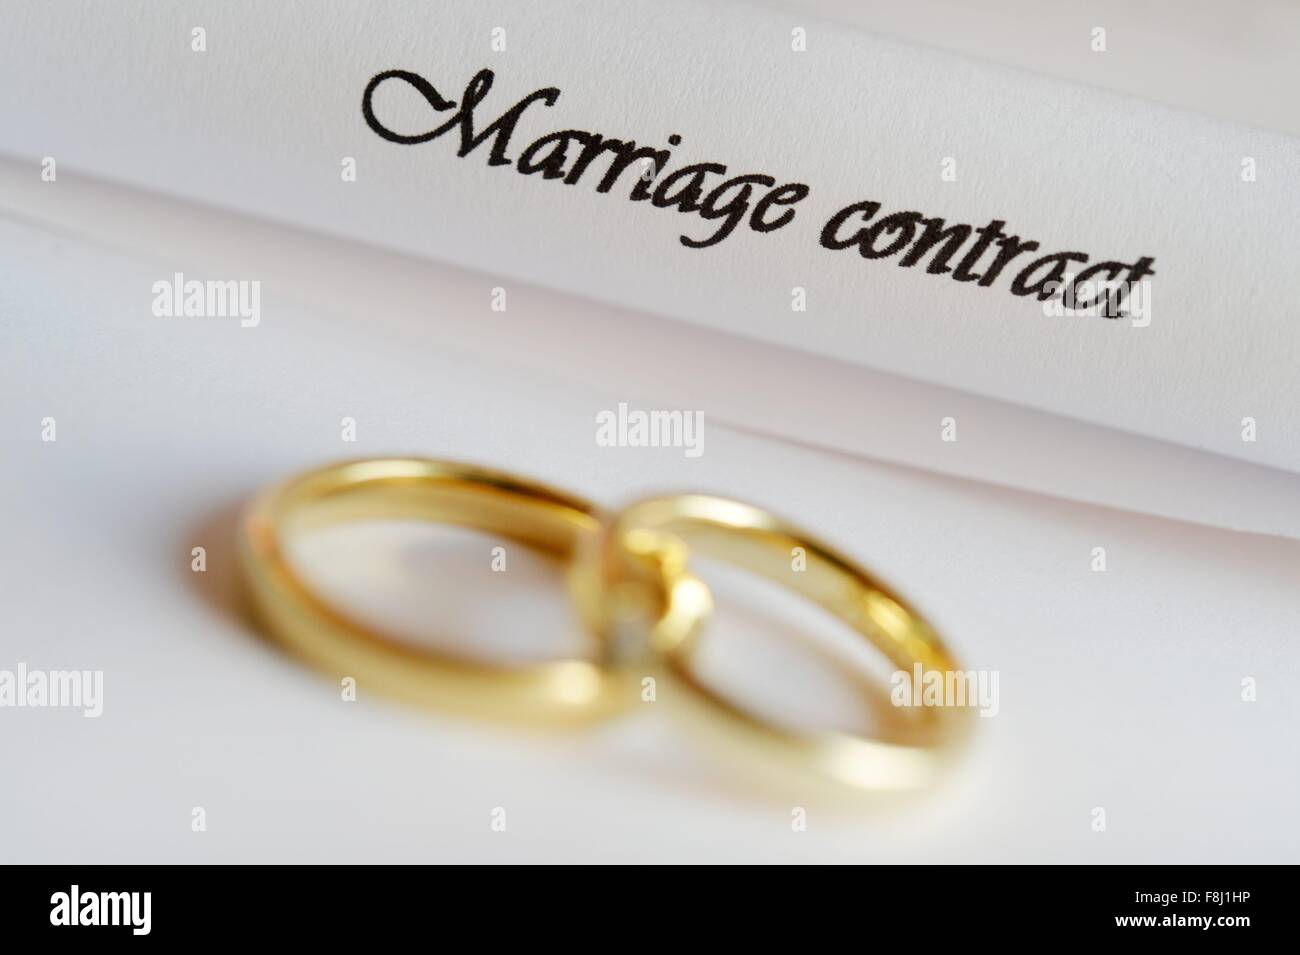 Due anelli si posa su un contratto di matrimonio, in Germania, città di Osterode, 09. Dicembre 2015. Foto: Frank può Foto Stock